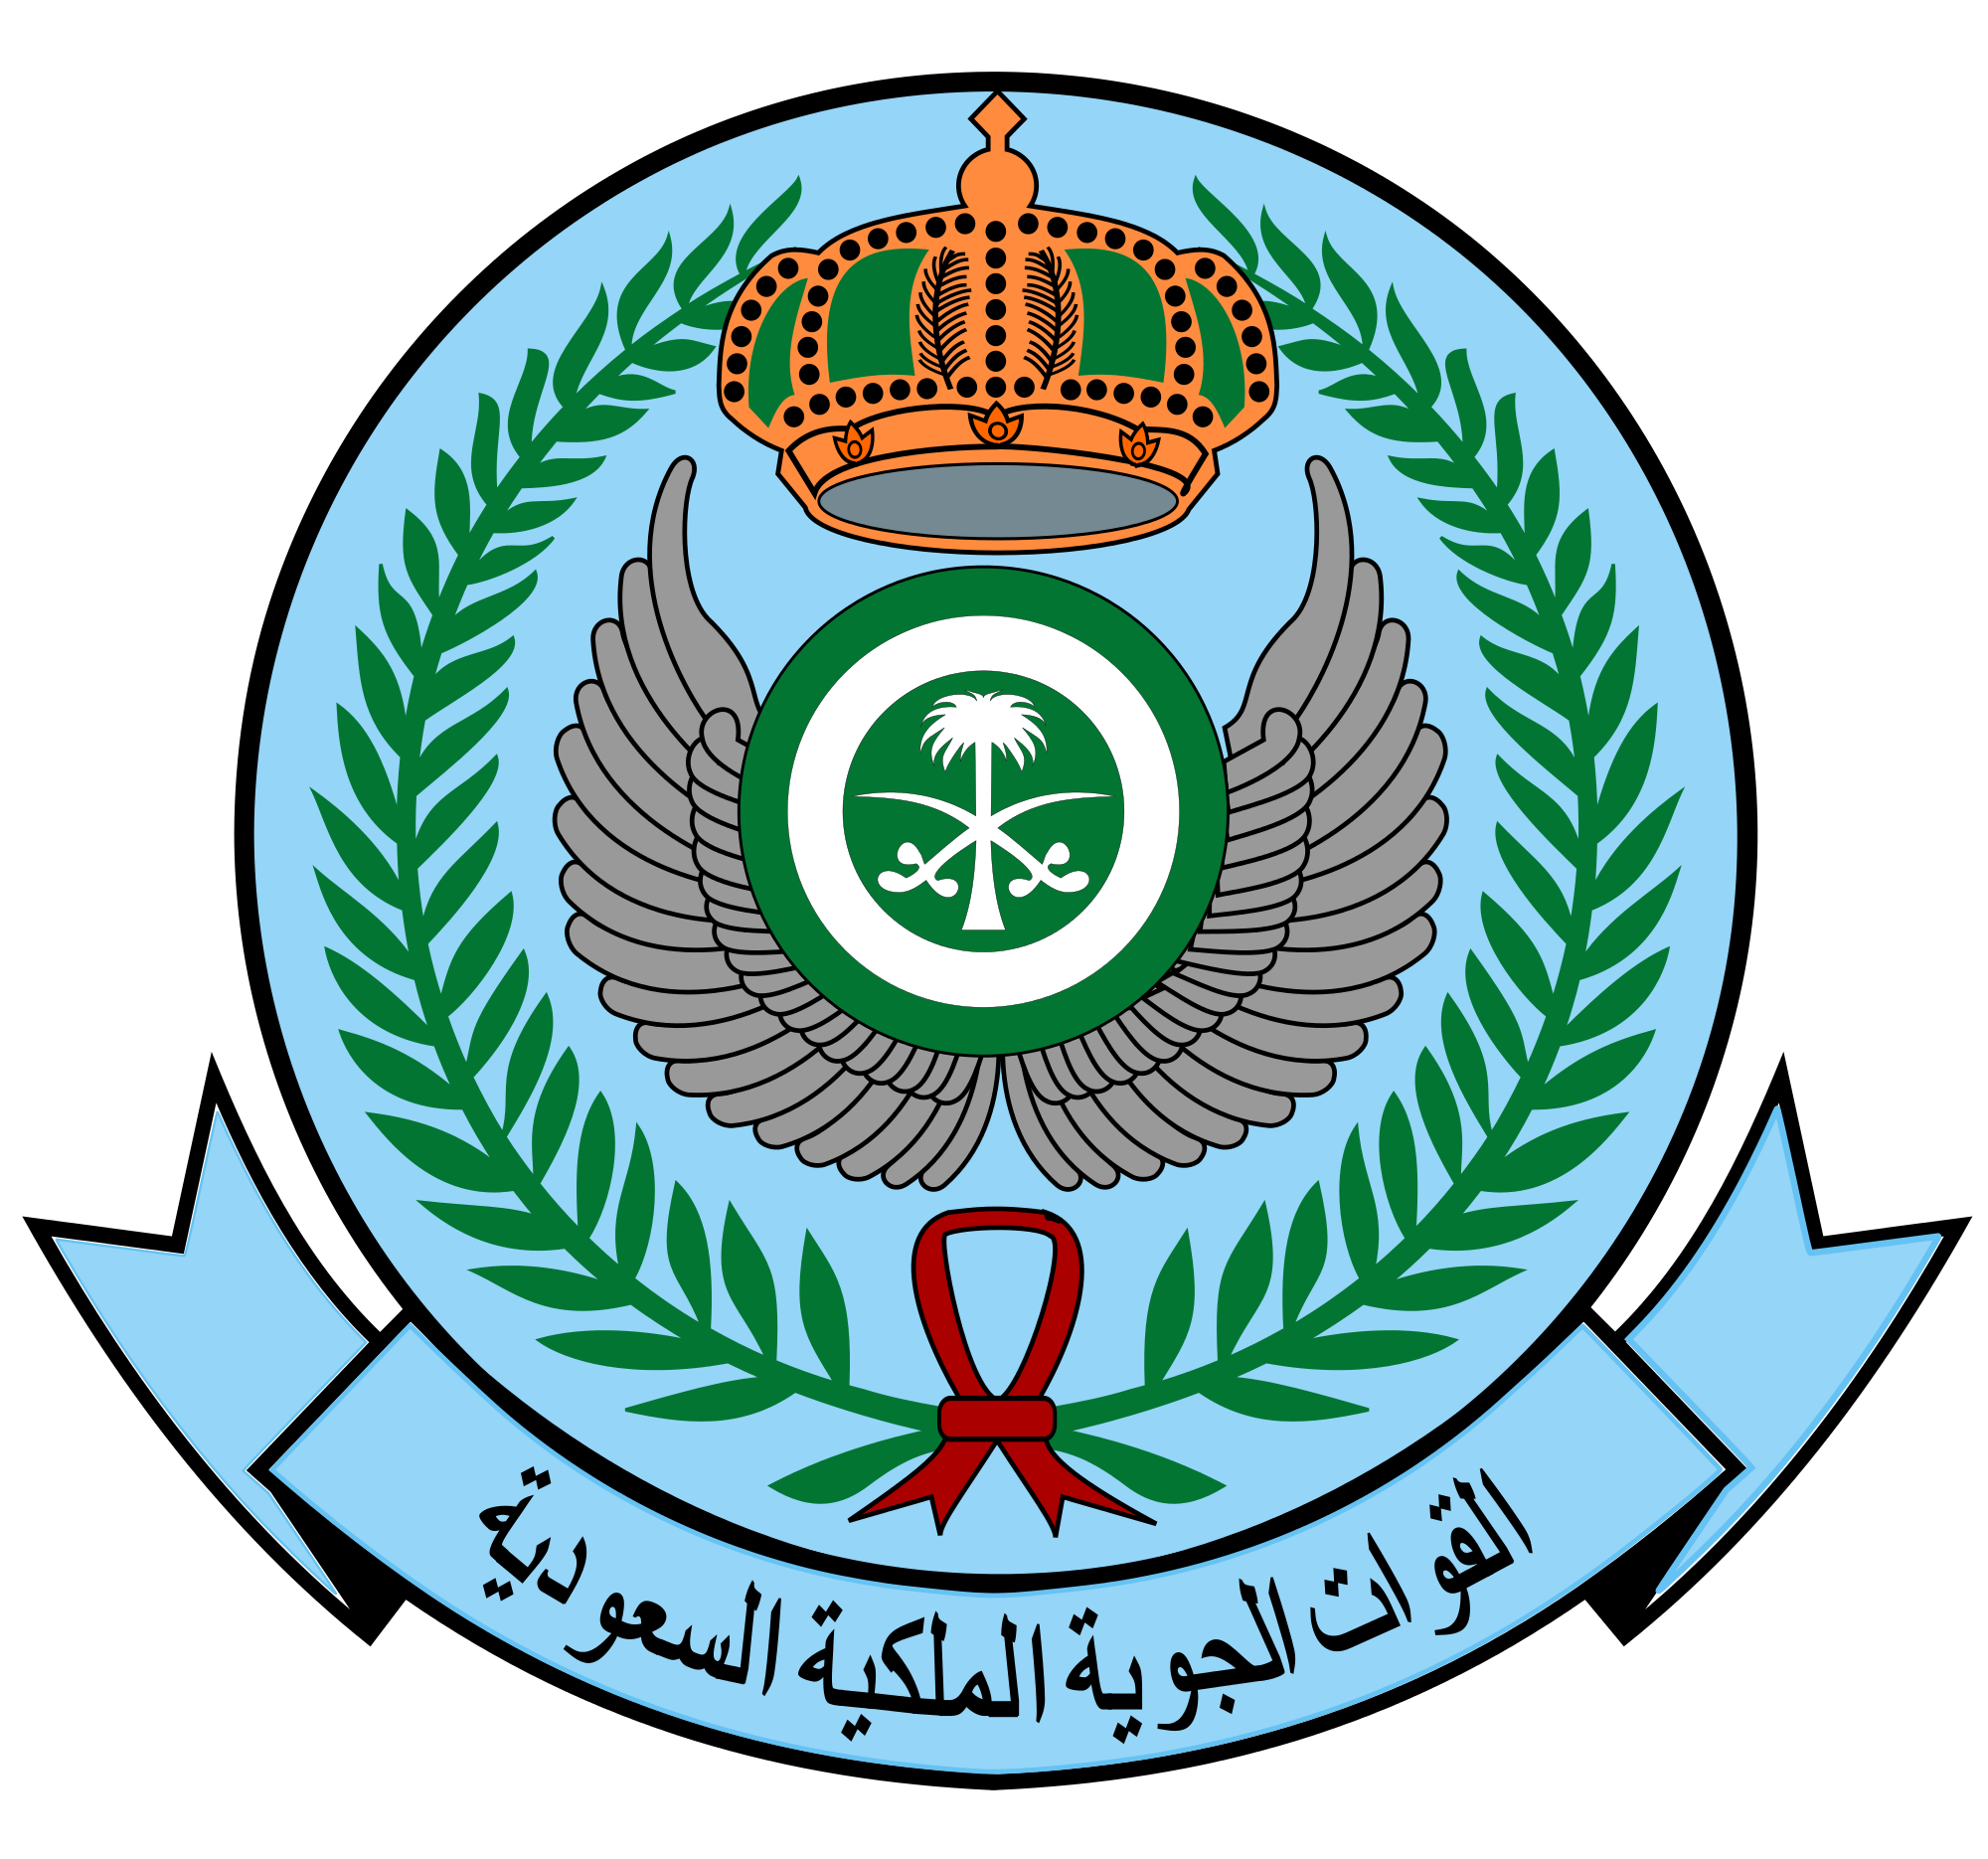 قوات الجوية الملكية السعودية تعلن عن بدء القبول و التسجيل بمعهد الدراسات الفنية للقوات الجوية بالظهران لحملة الثانوية العامة